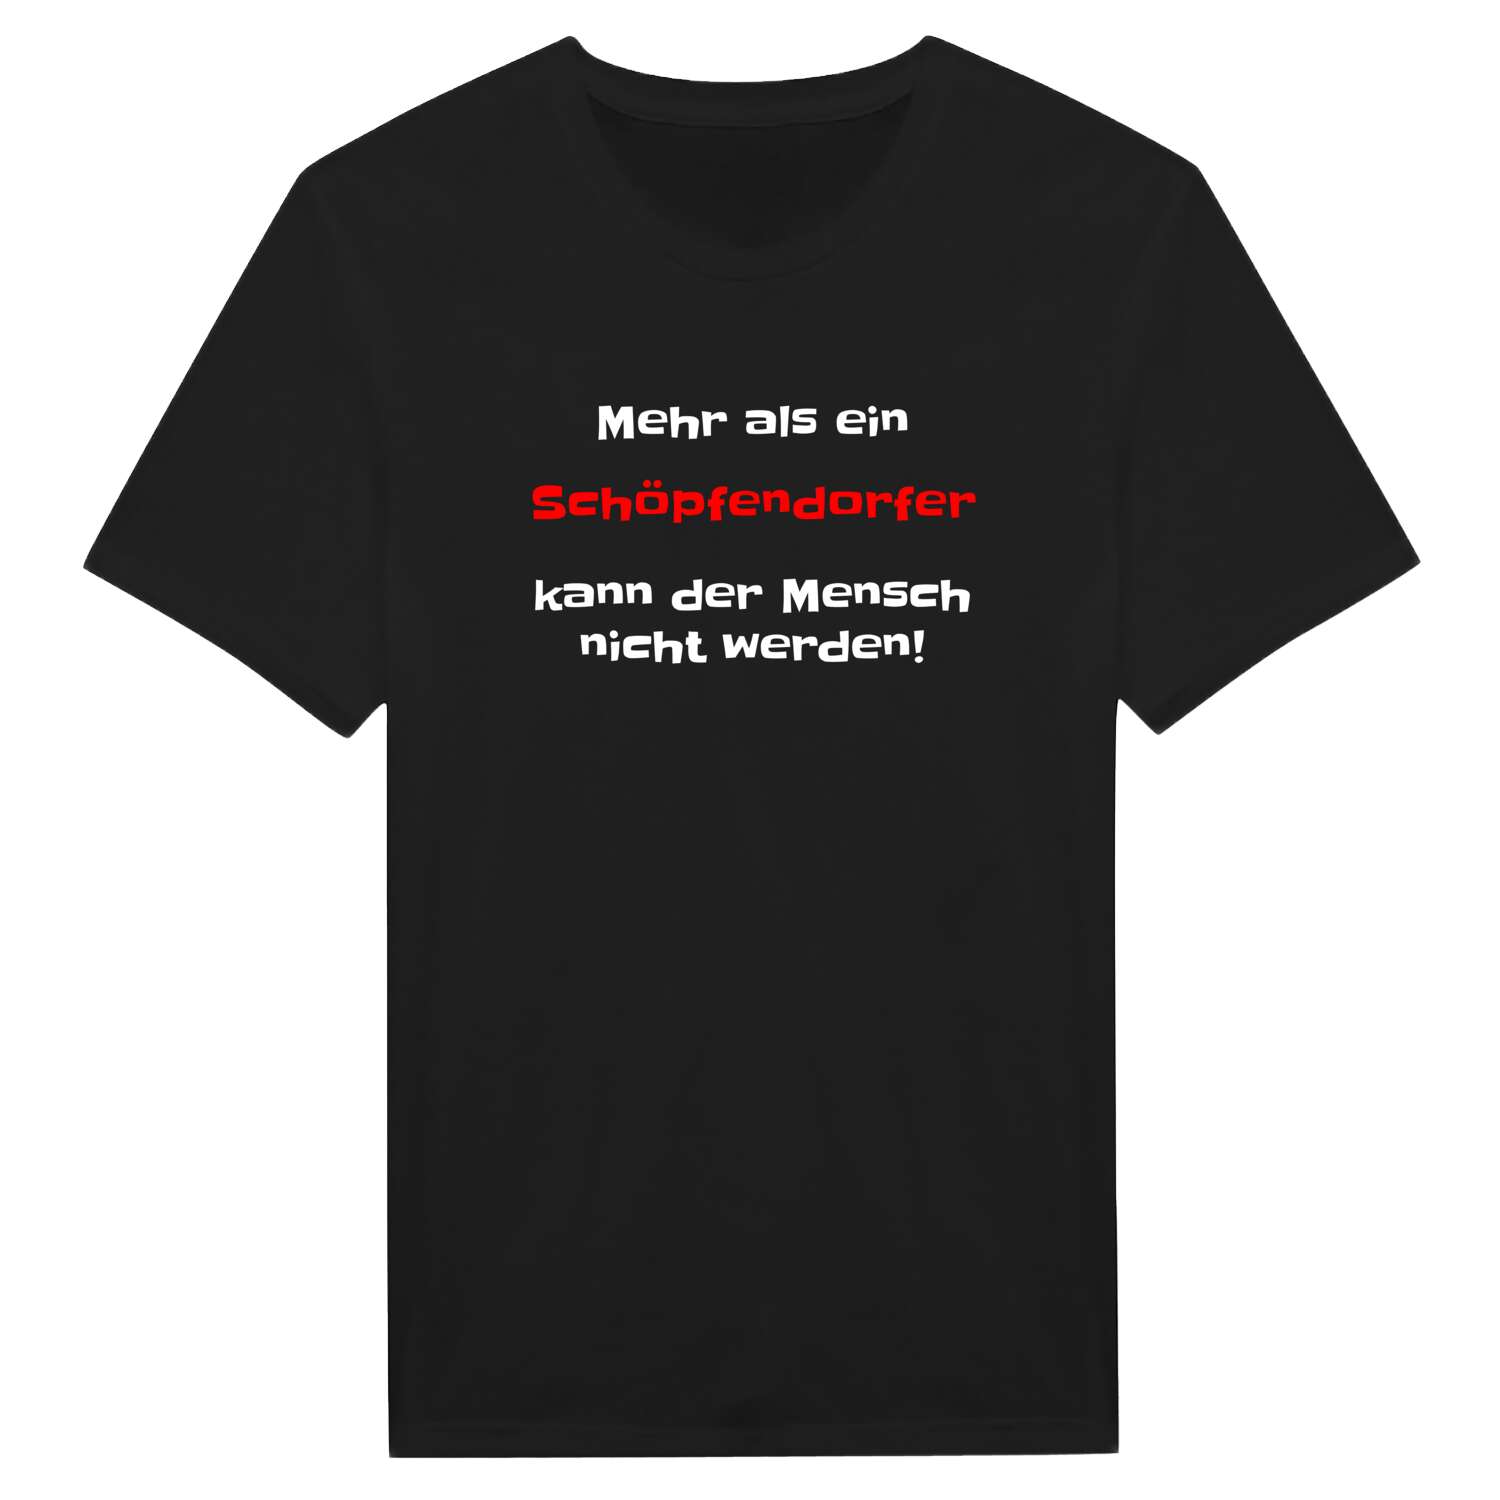 Schöpfendorf T-Shirt »Mehr als ein«